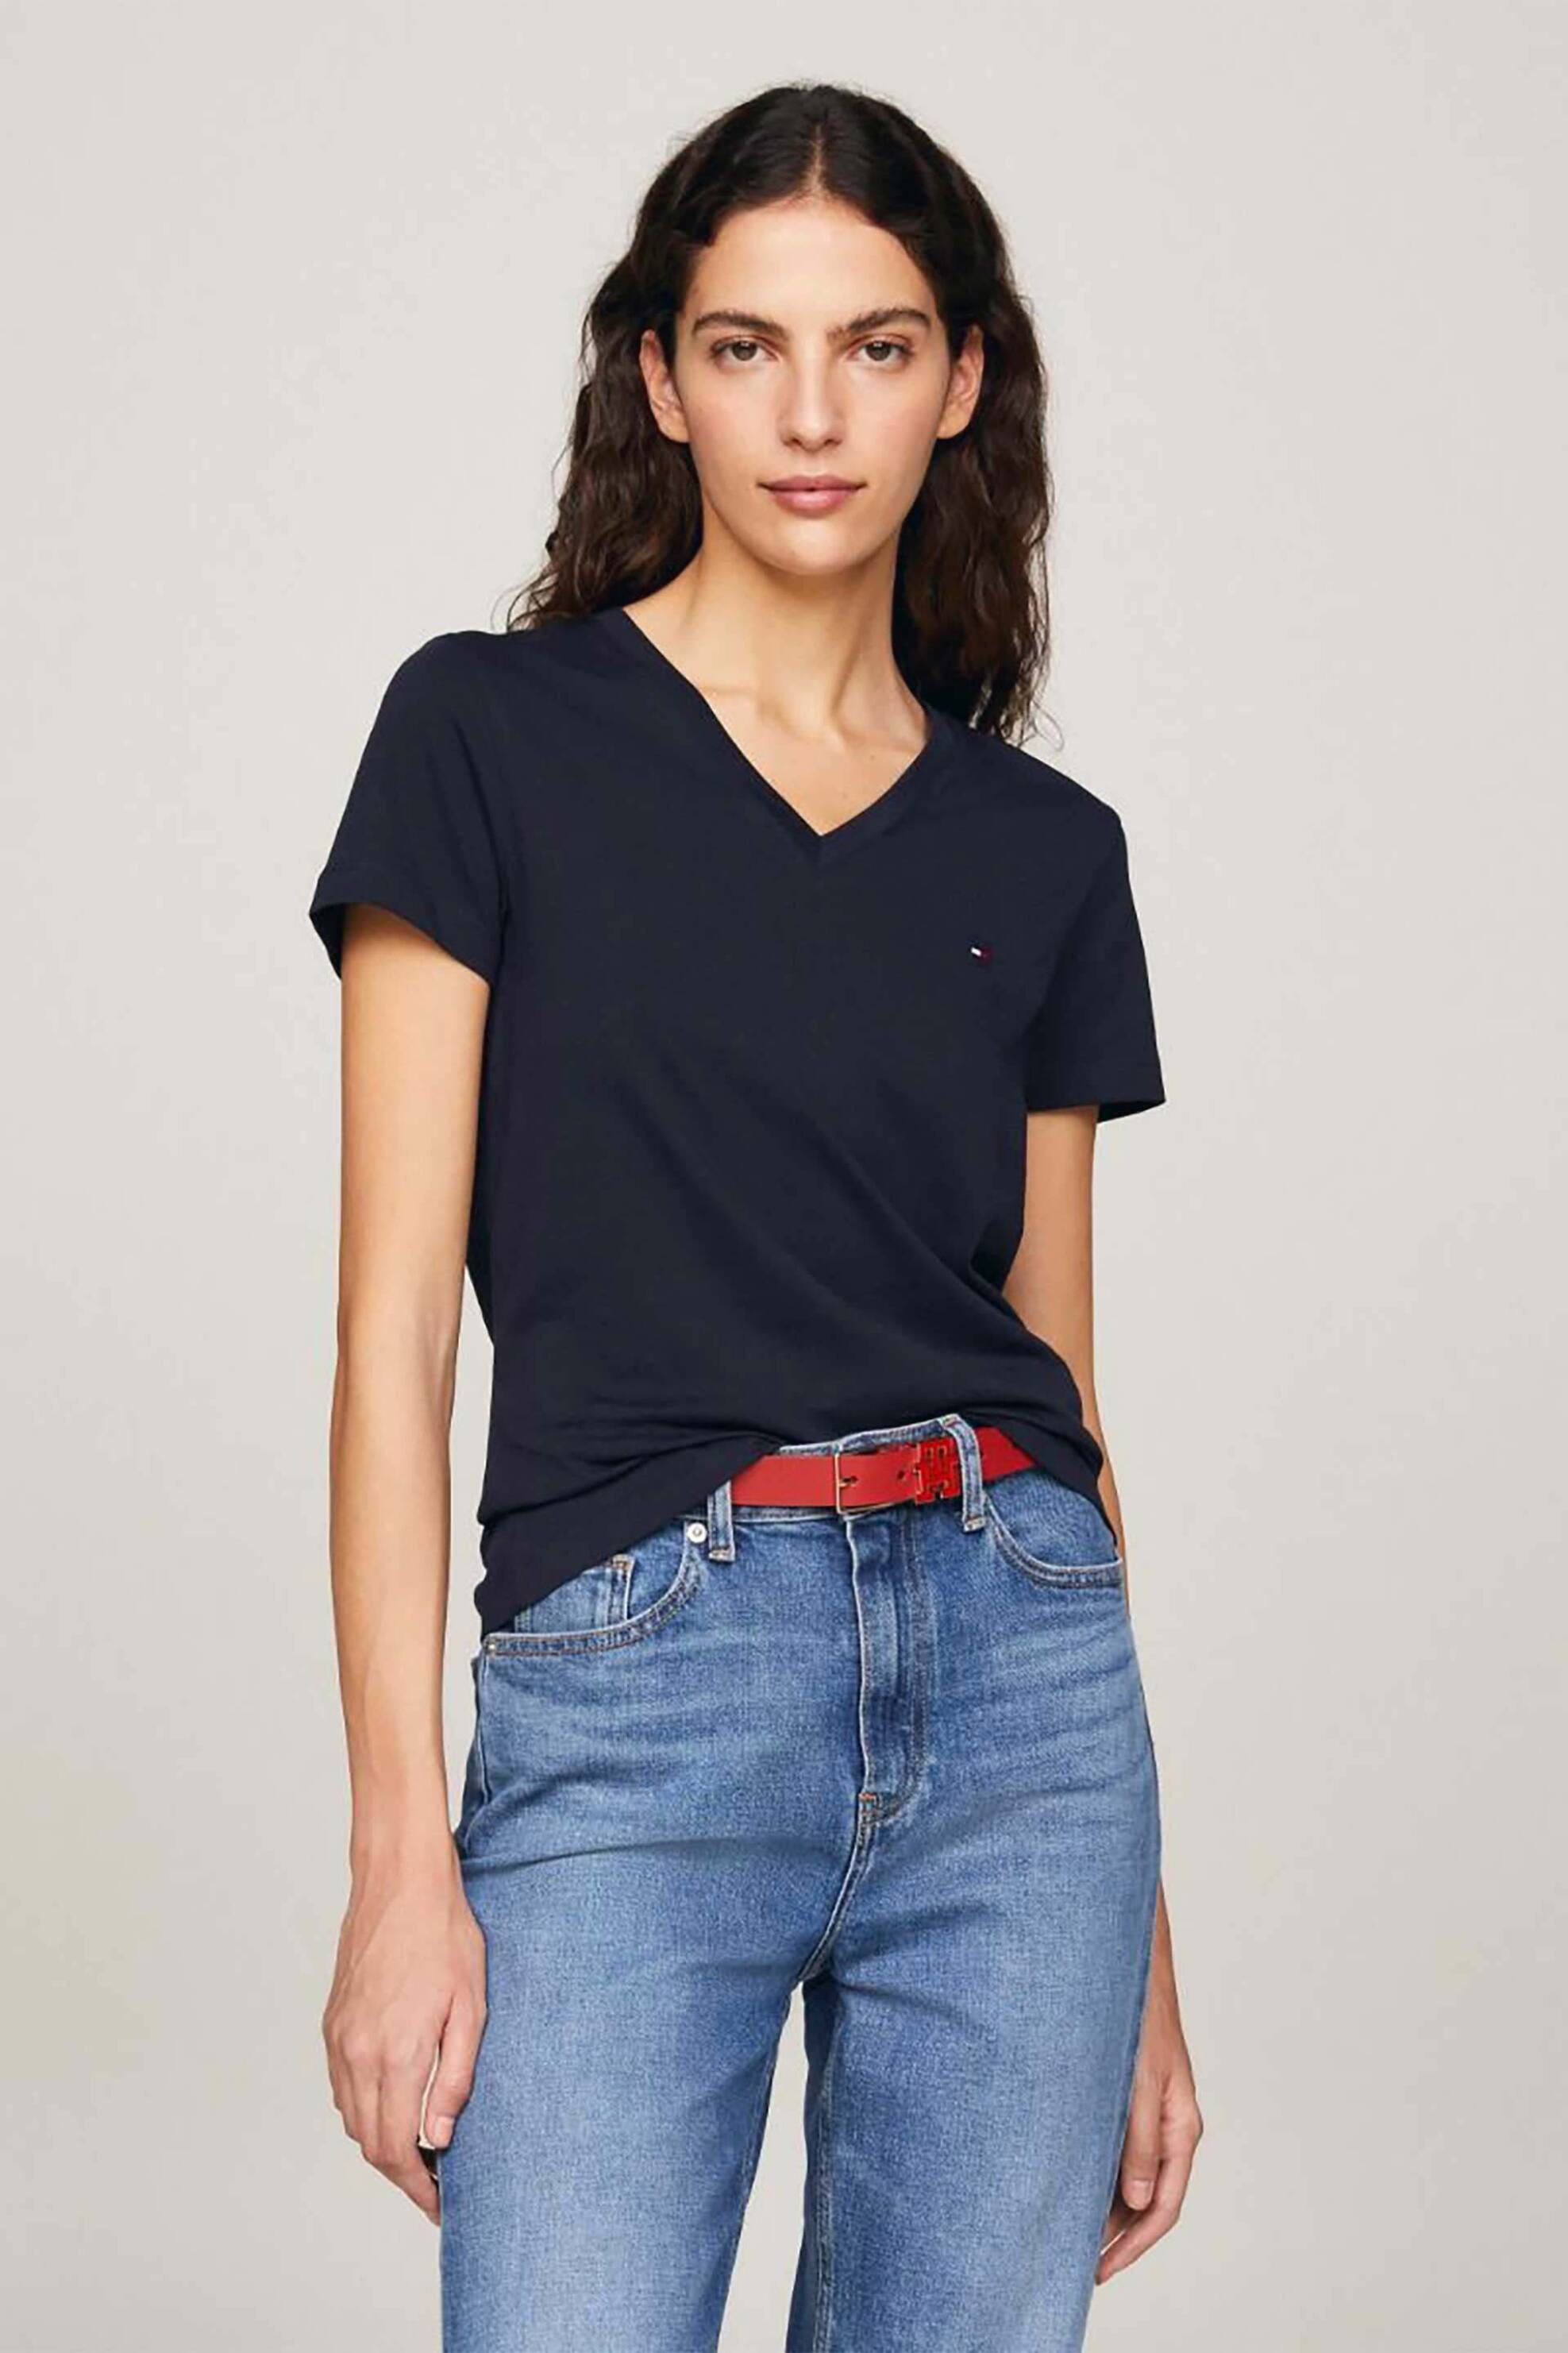 Γυναίκα > ΡΟΥΧΑ > Tops > T-Shirts Tommy Hilfiger γυναικείο βαμβακερό T-shirt μονόχρωμο με V λαιμόκοψη και contrast logo print - WW0WW24969 Μπλε Σκούρο